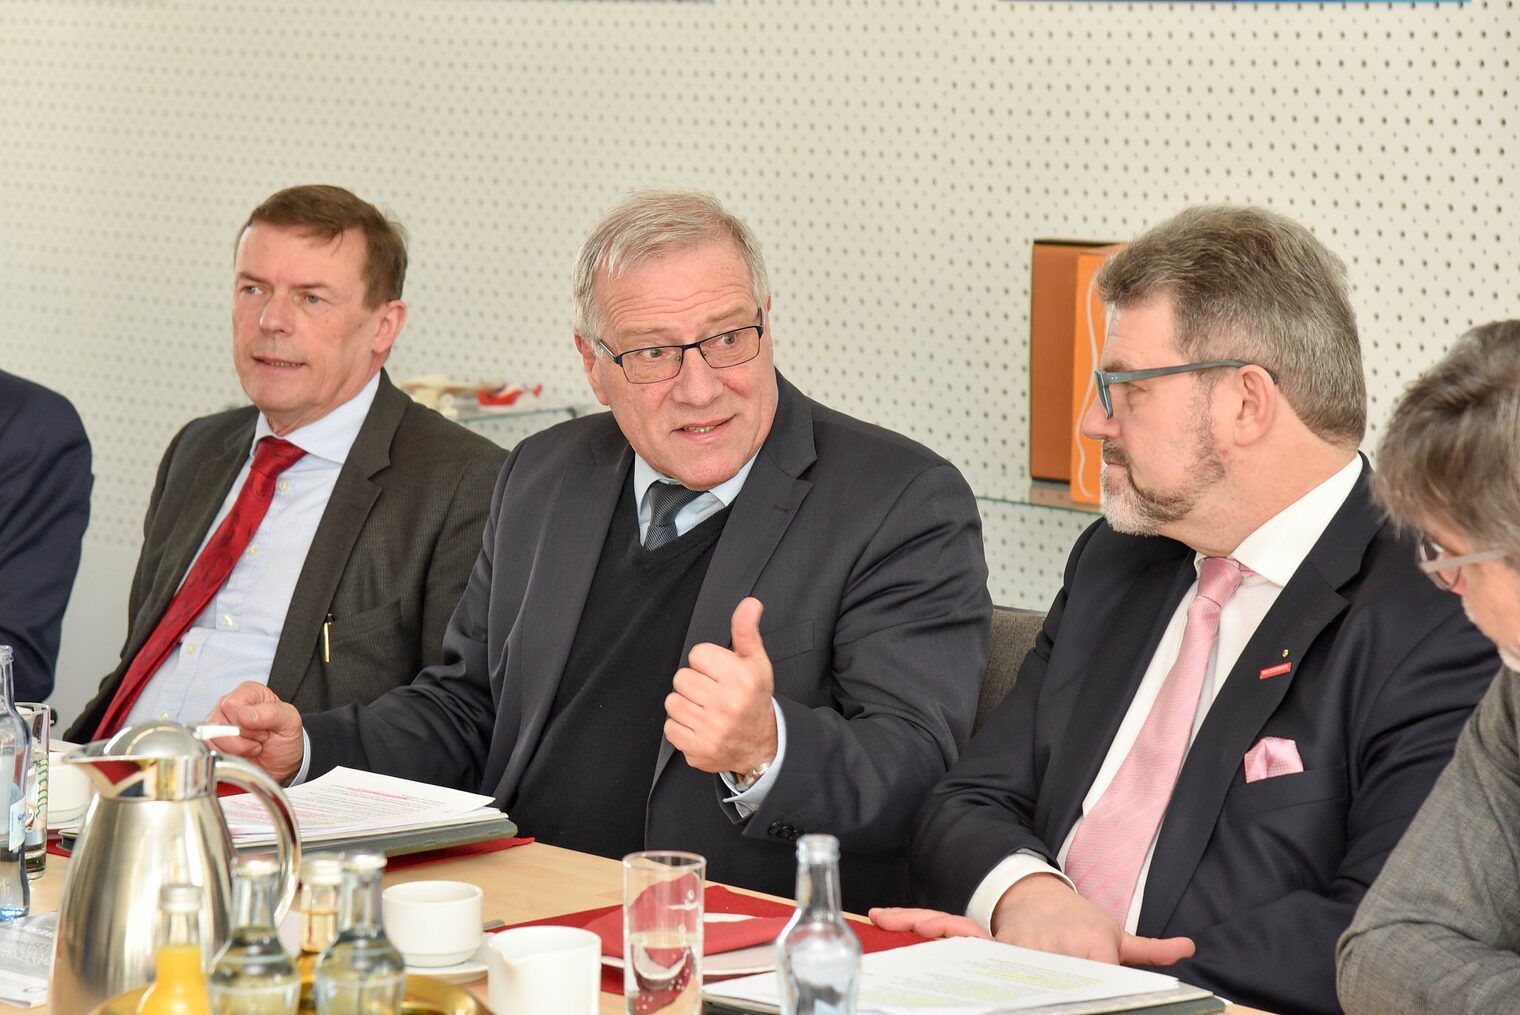 v. l.: Ralf Holtzwart, Johannes Hintersberger, Thomas Zimmer, Thomas Koller